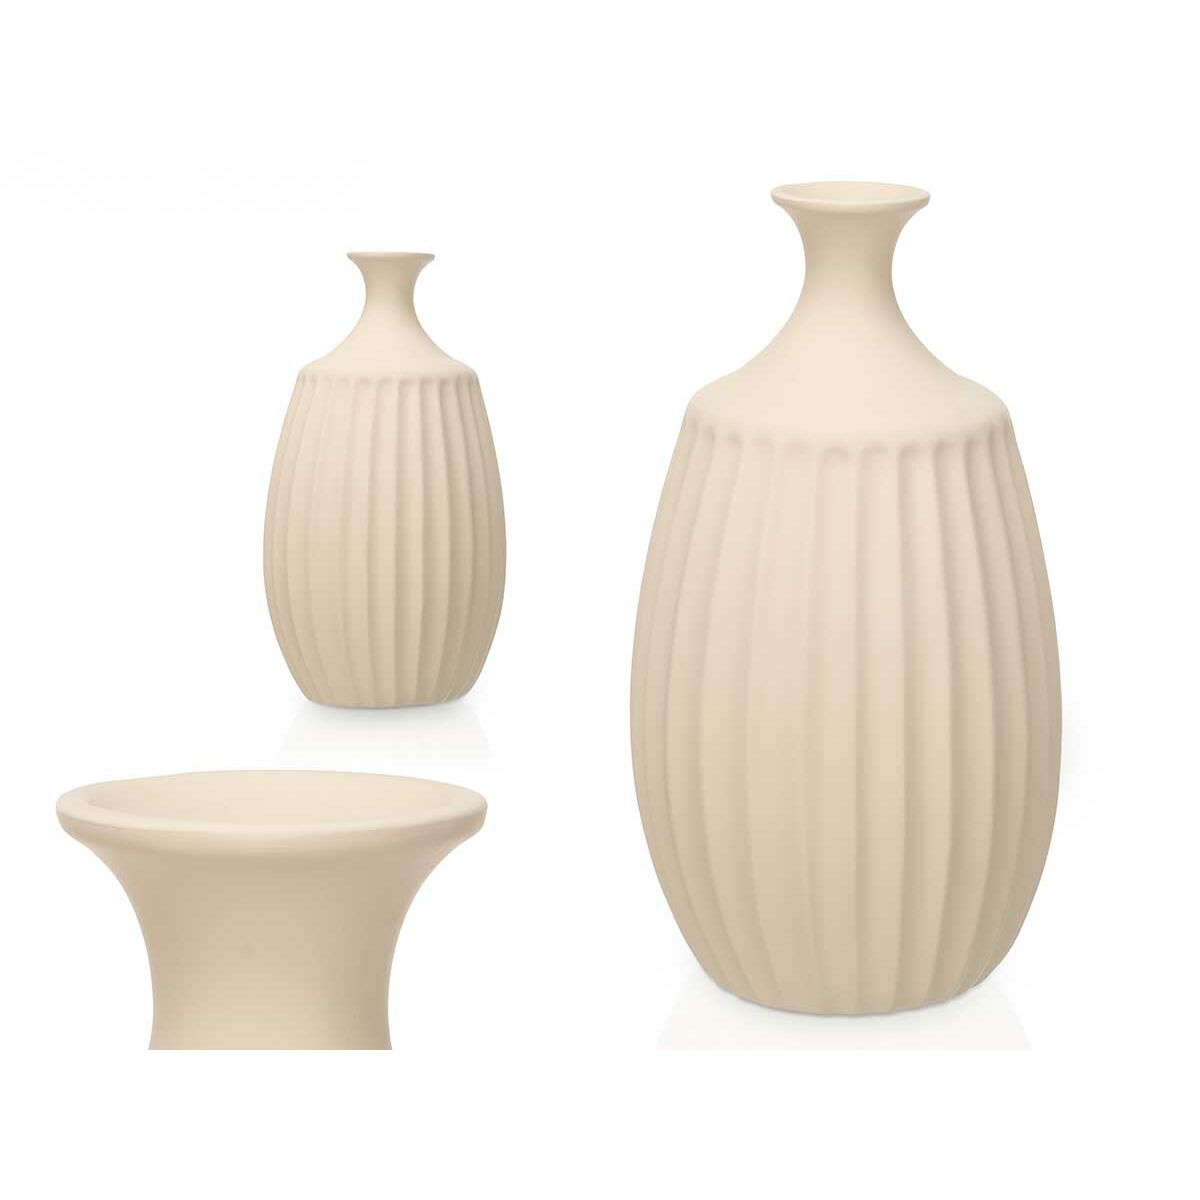 Vase Beige aus Keramik 27 x 48 x 27 cm